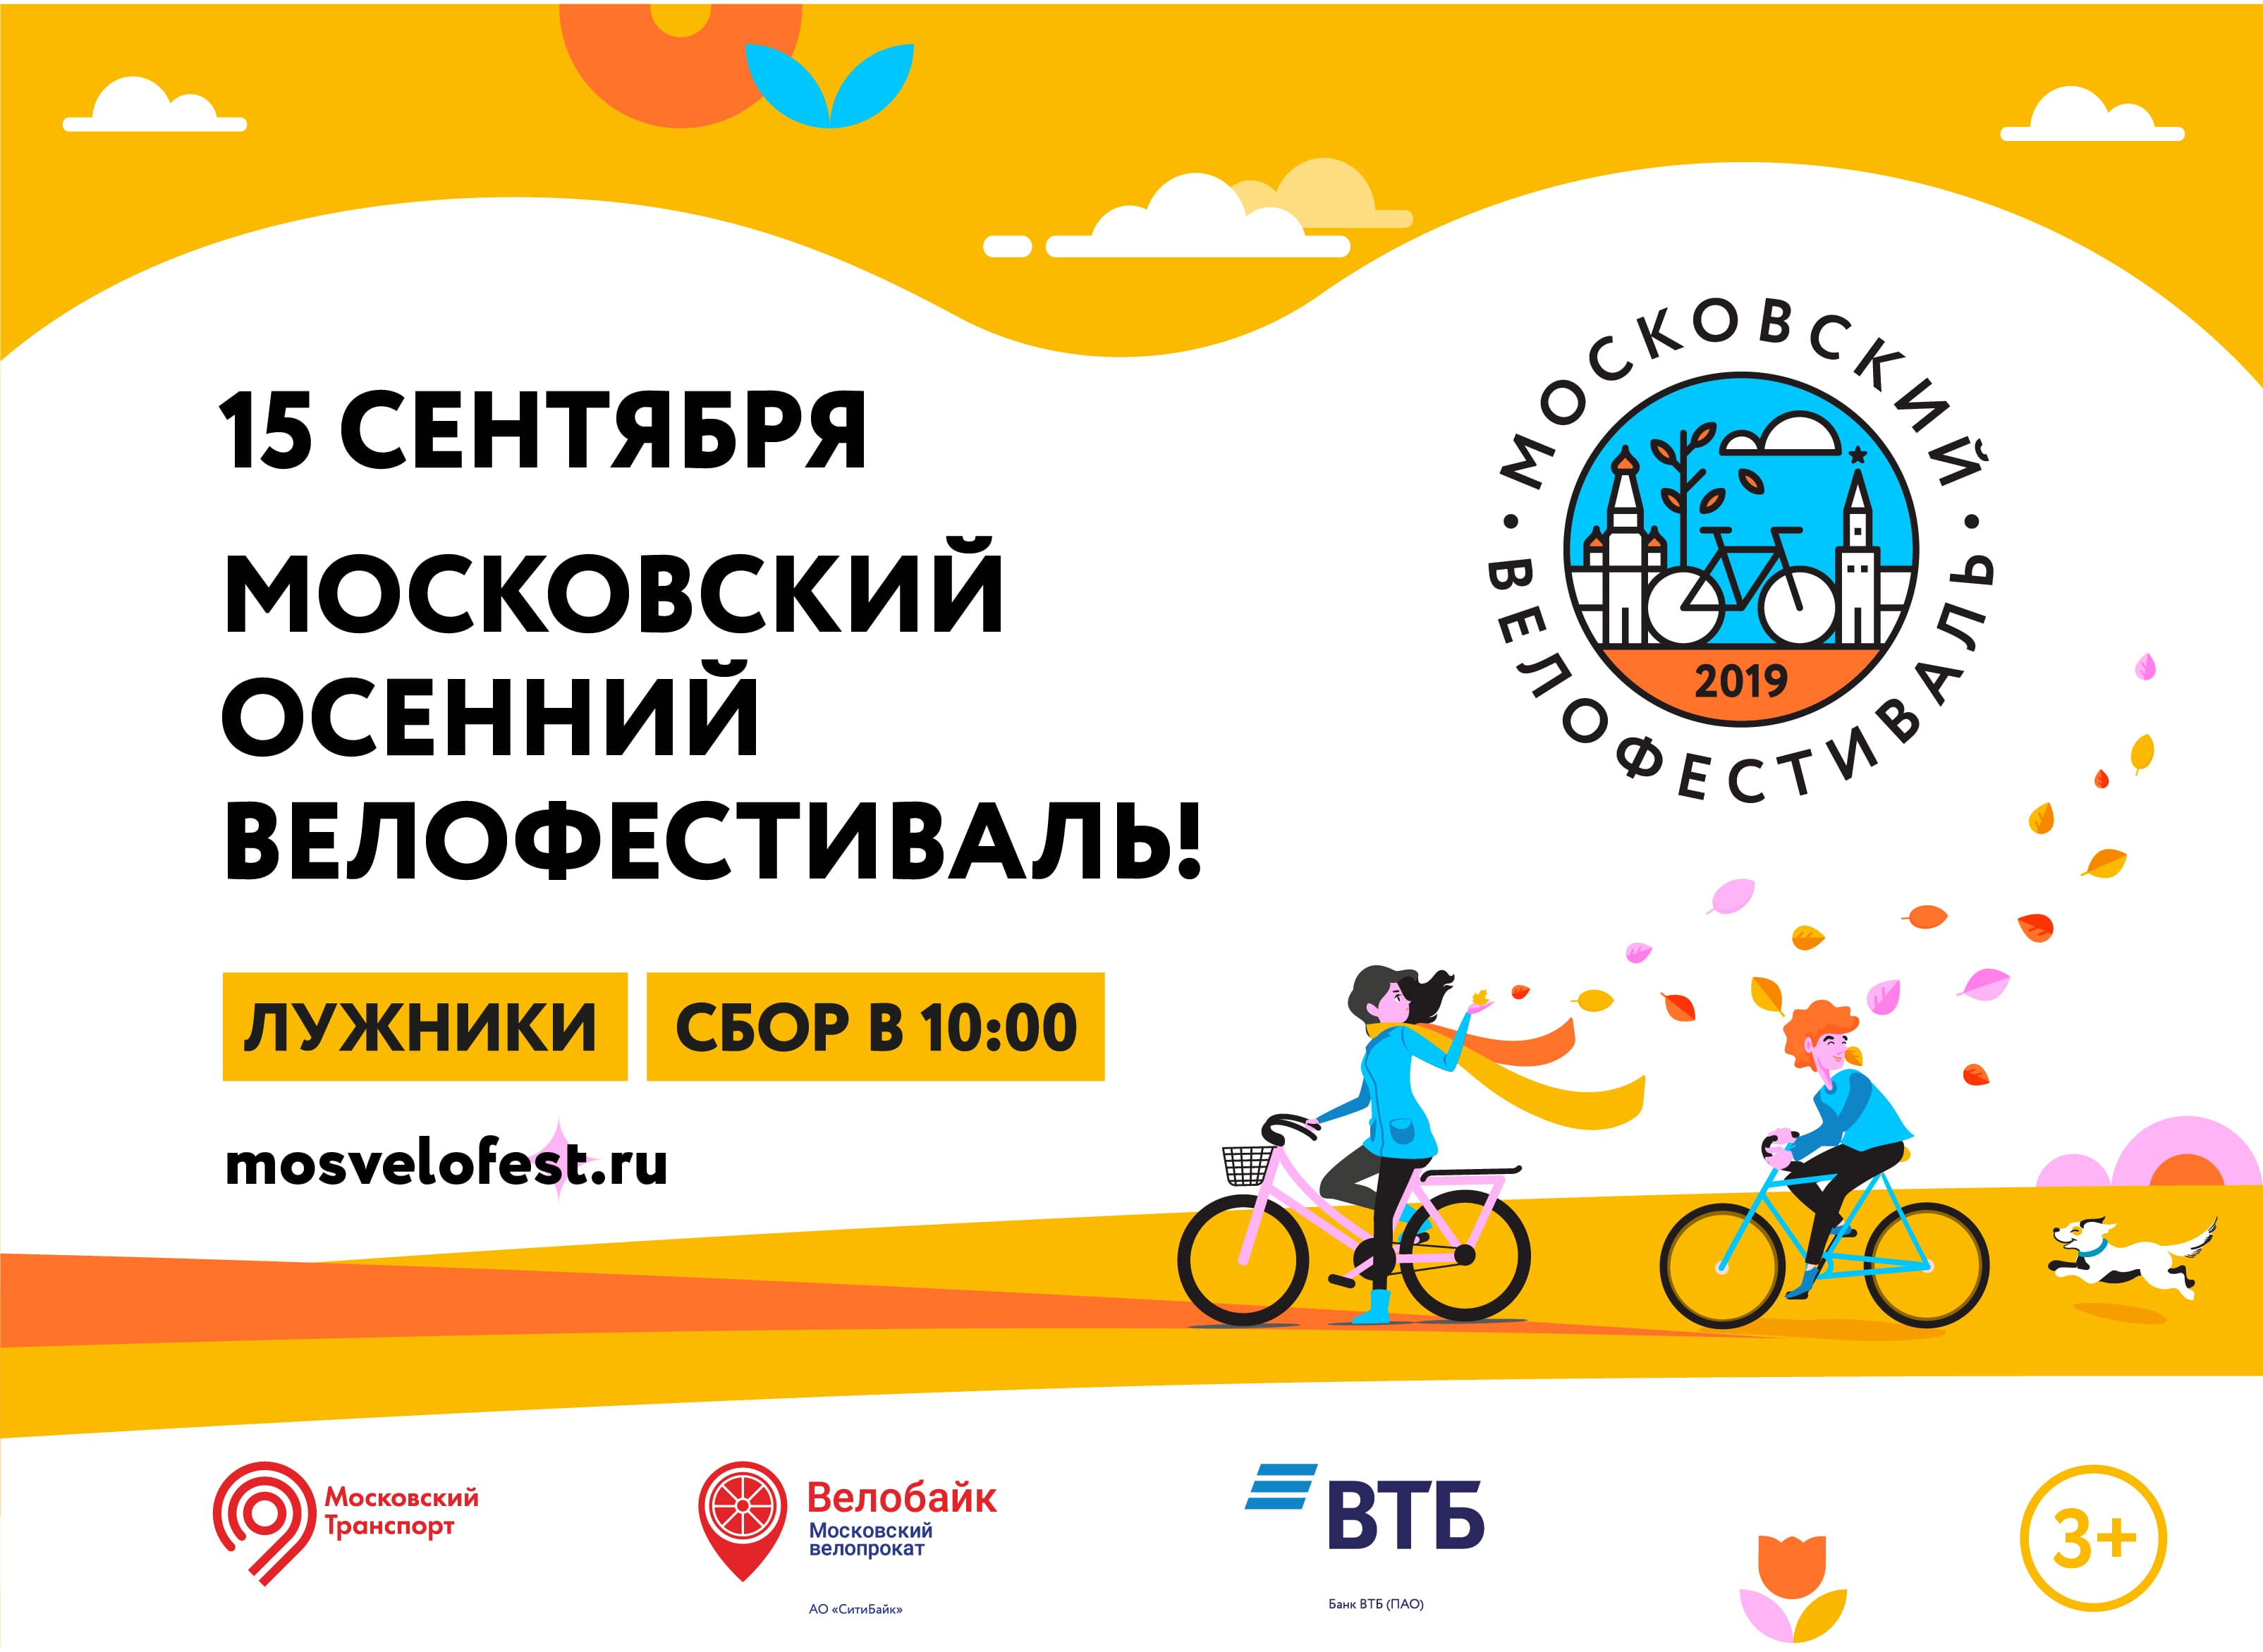 15 сентября состоится Московский Осенний велофестиваль